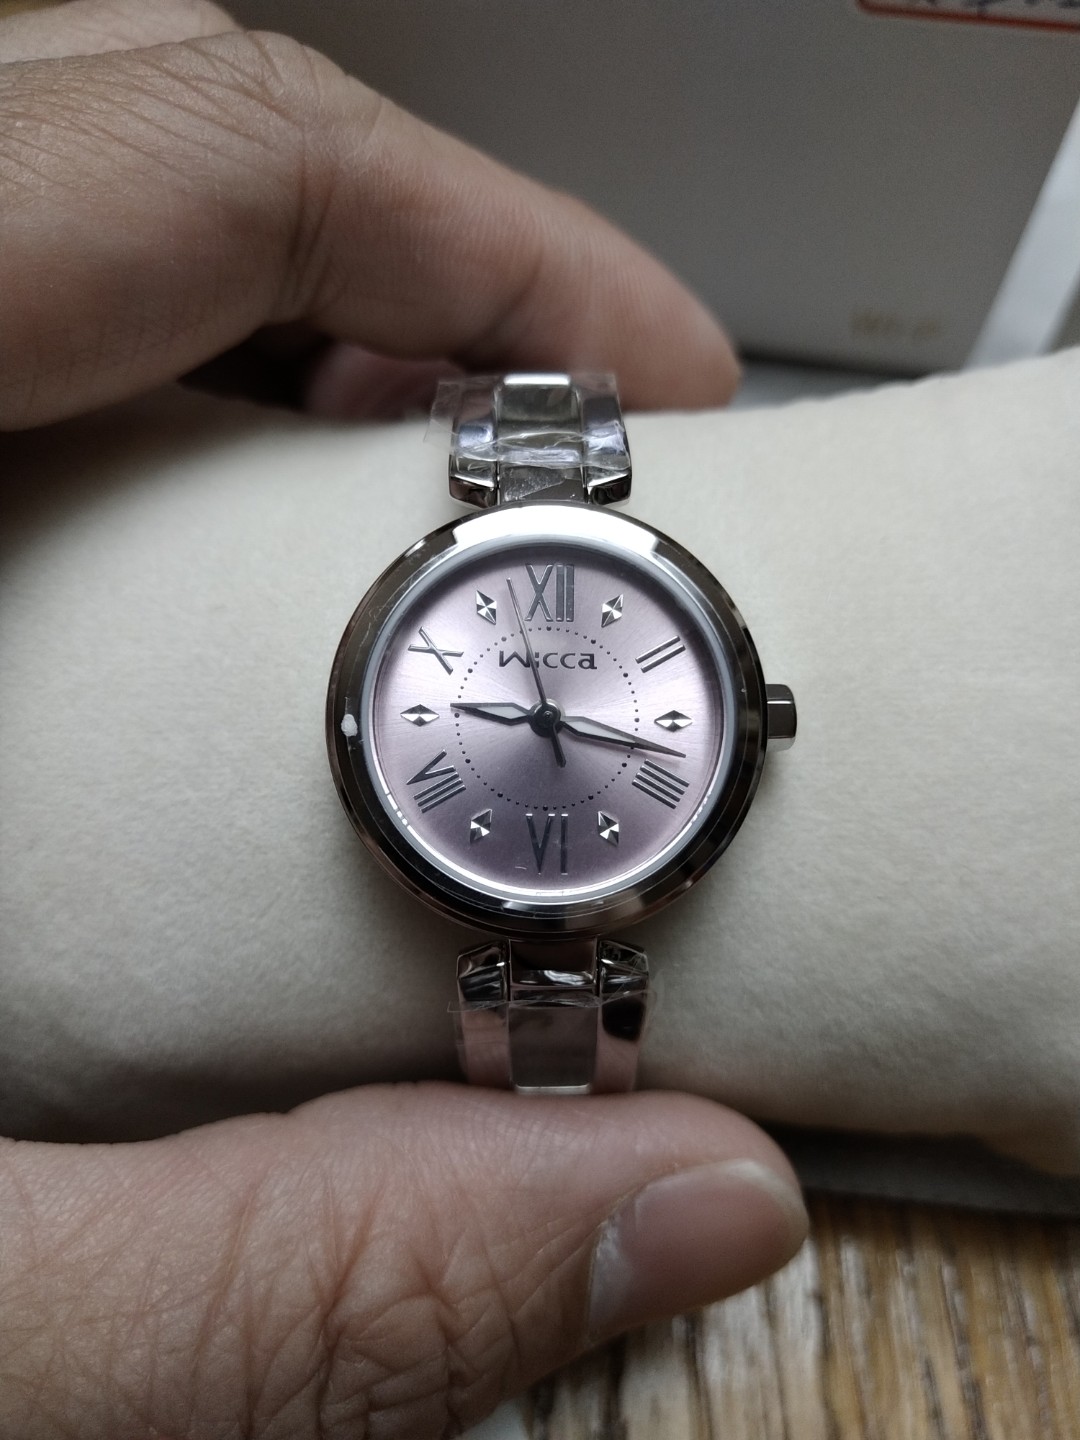 英倫時尚腕錶BG3-911-91, 名牌精品, 精品手錶在旋轉拍賣